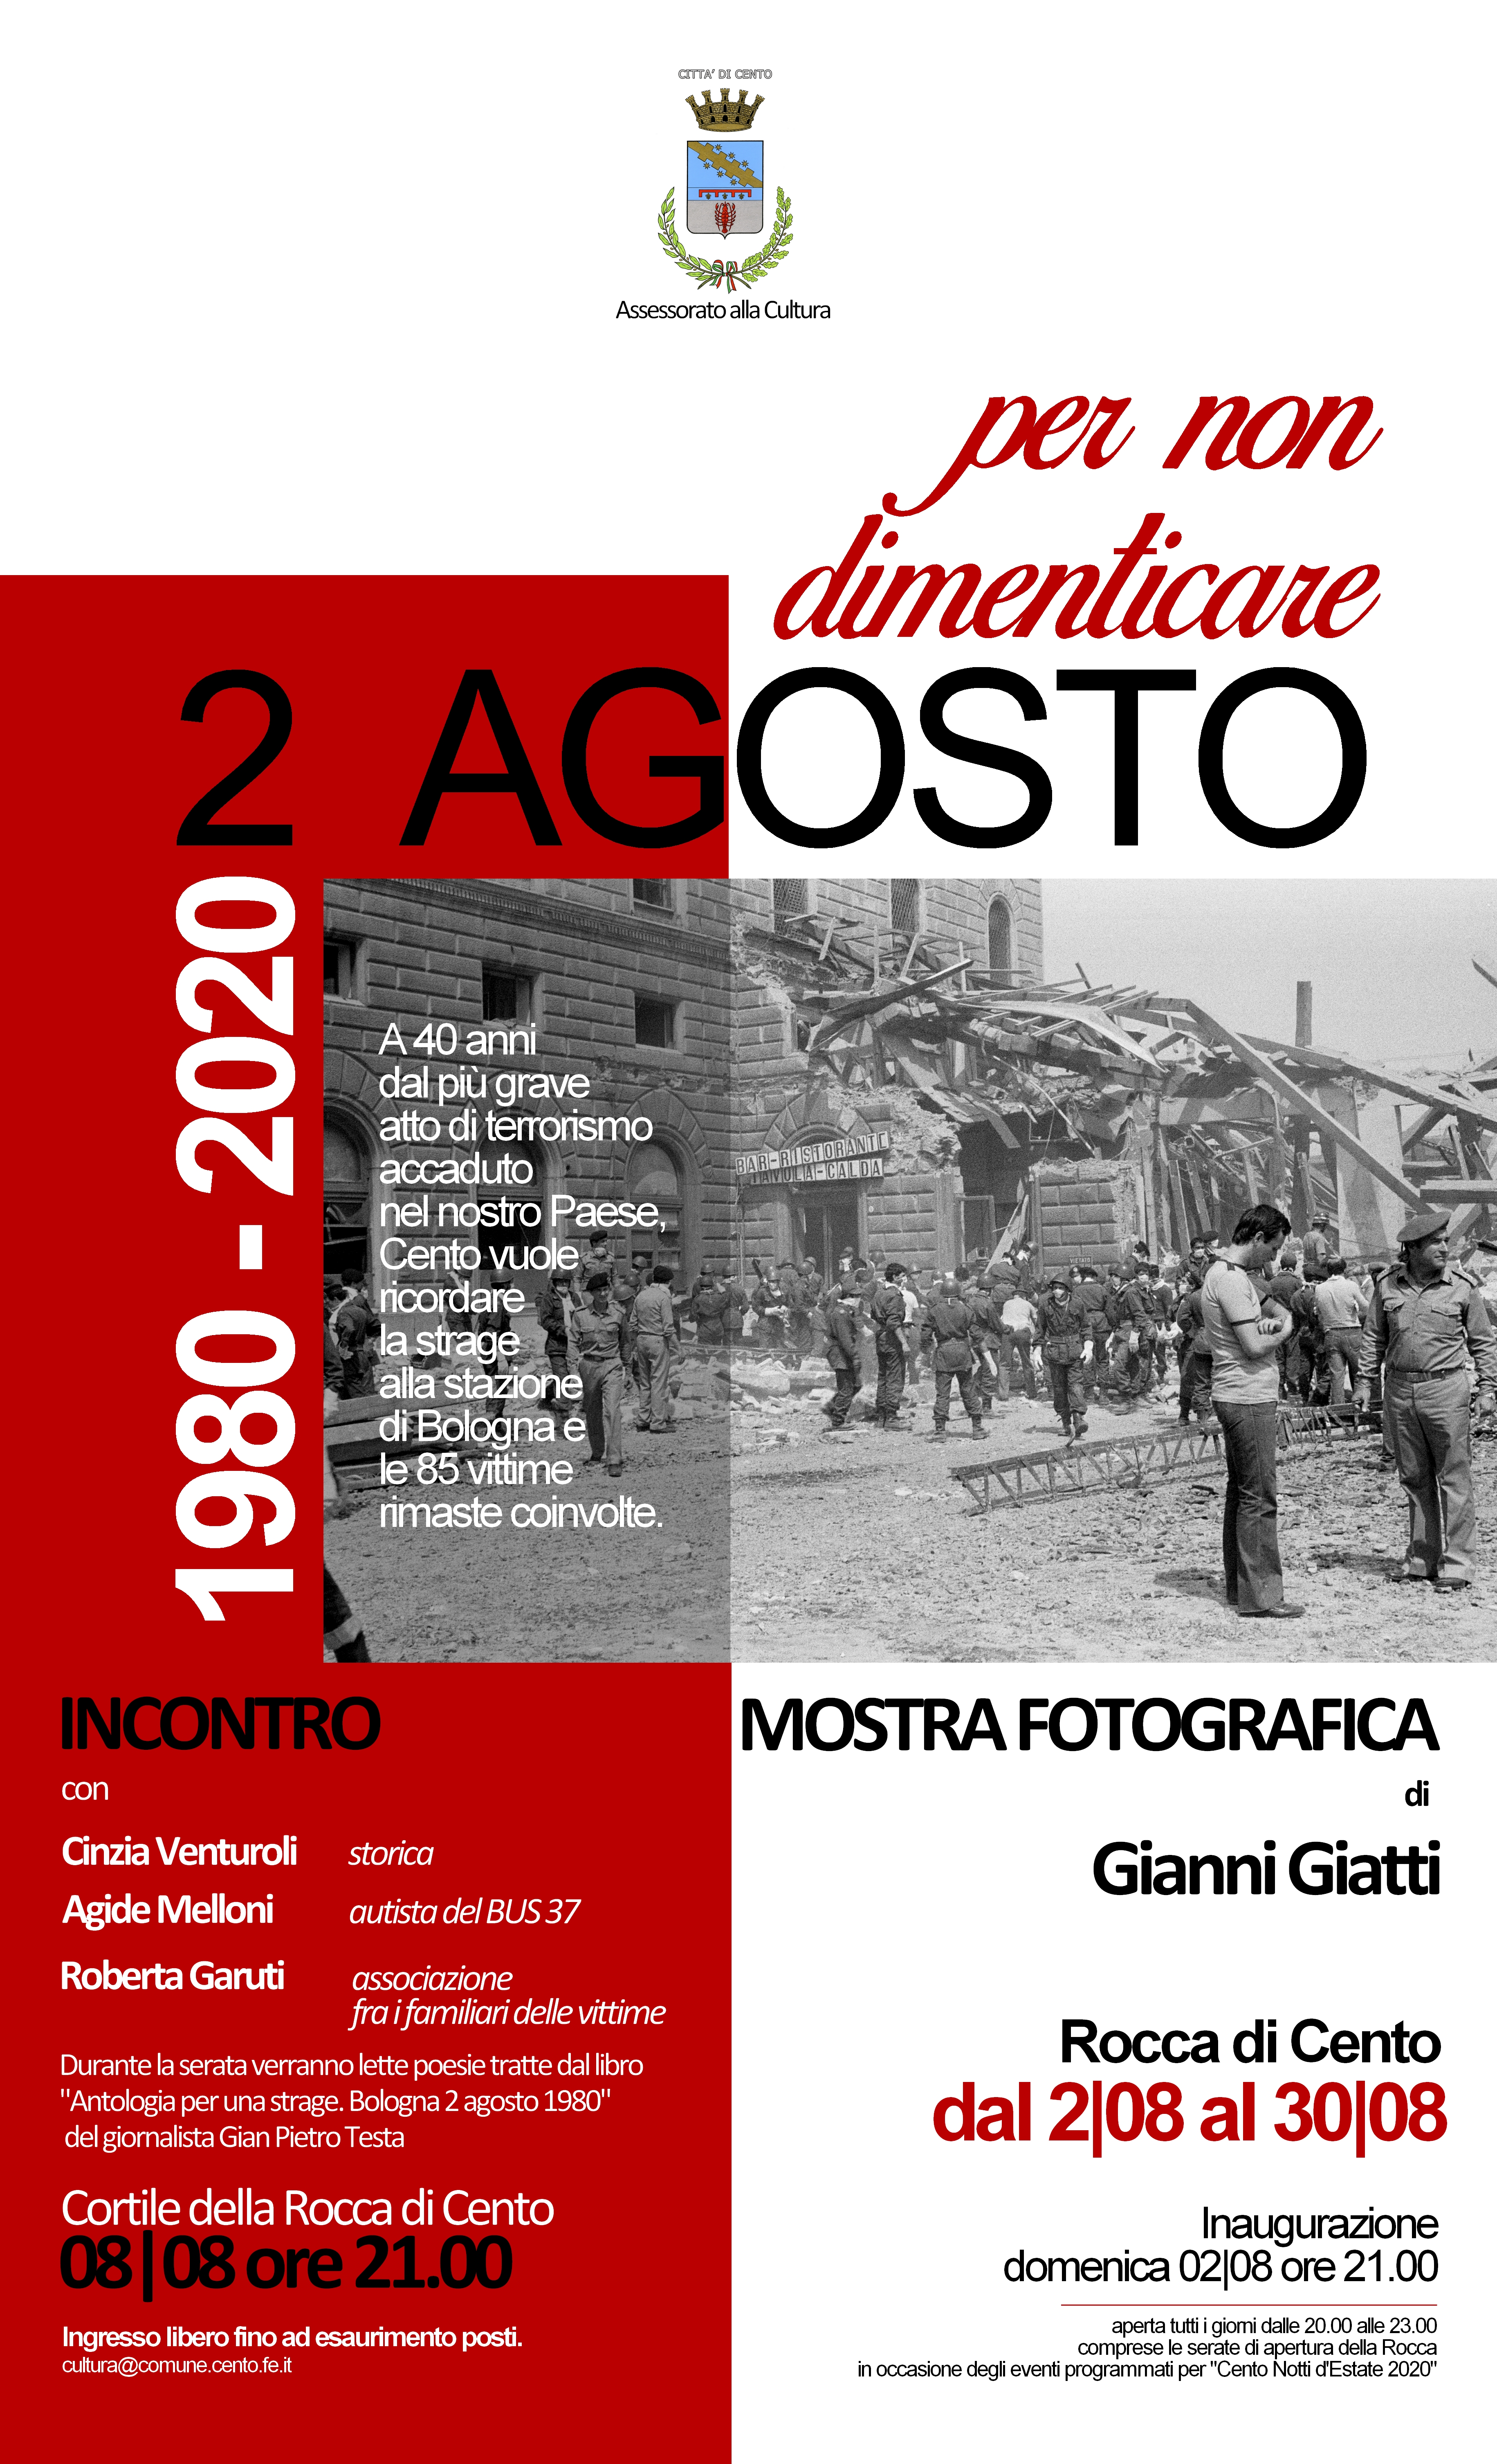 locandina della mostra del 2 agosto con fotografia stazione dopo la bomba e descrizione evento e orari